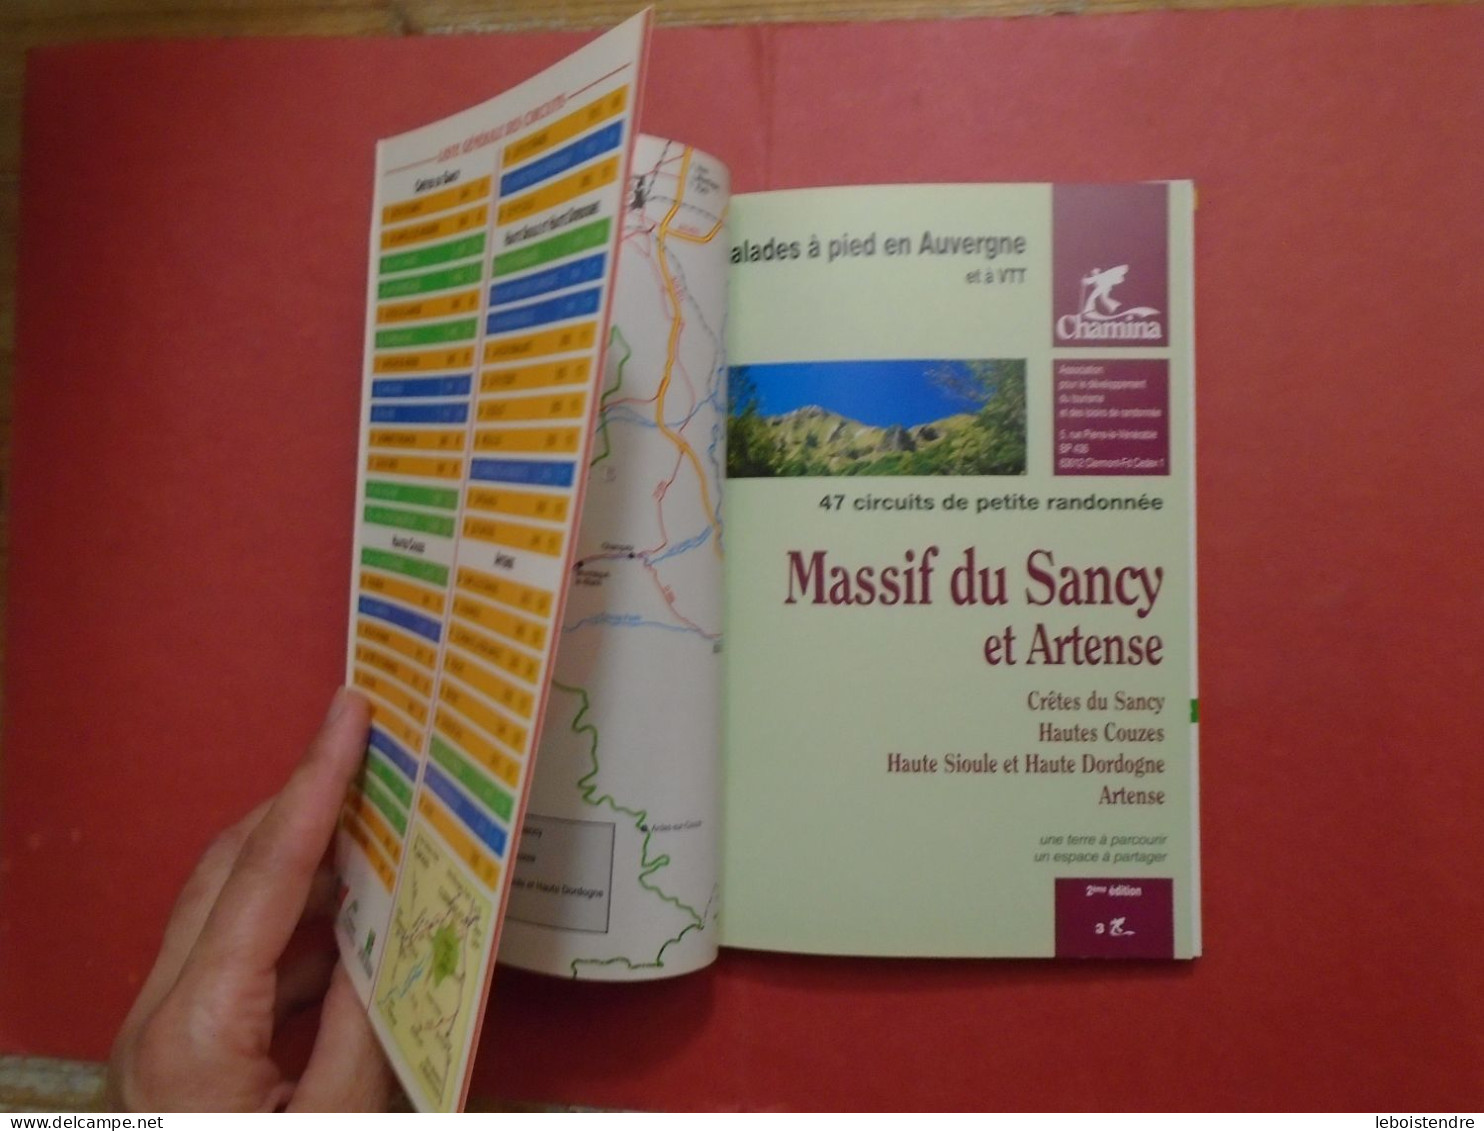 MASSIF DU SANCY ET ARTENSE BALADES A PIED EN AUVERGNE ET A VTT 47 CIRCUITS DE PETITE RANDONNEE MASSIF CENTRAL CHAMINA PR - Auvergne